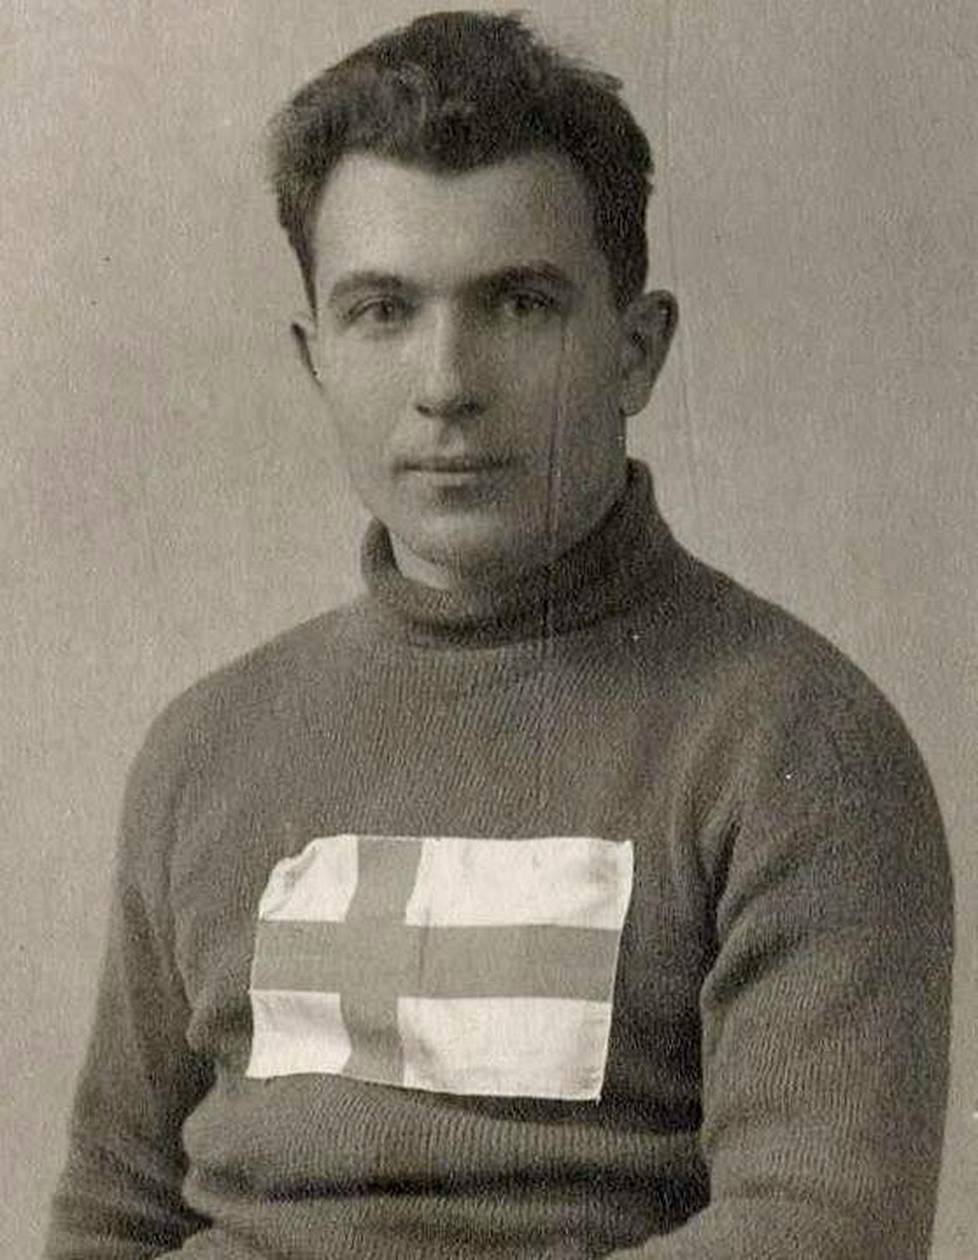 Tapani Niku aloitti kilpauransa jo ennen sisällissotaa. Talvella 1918 hän liittyi Lillierin hiihtäjiin.